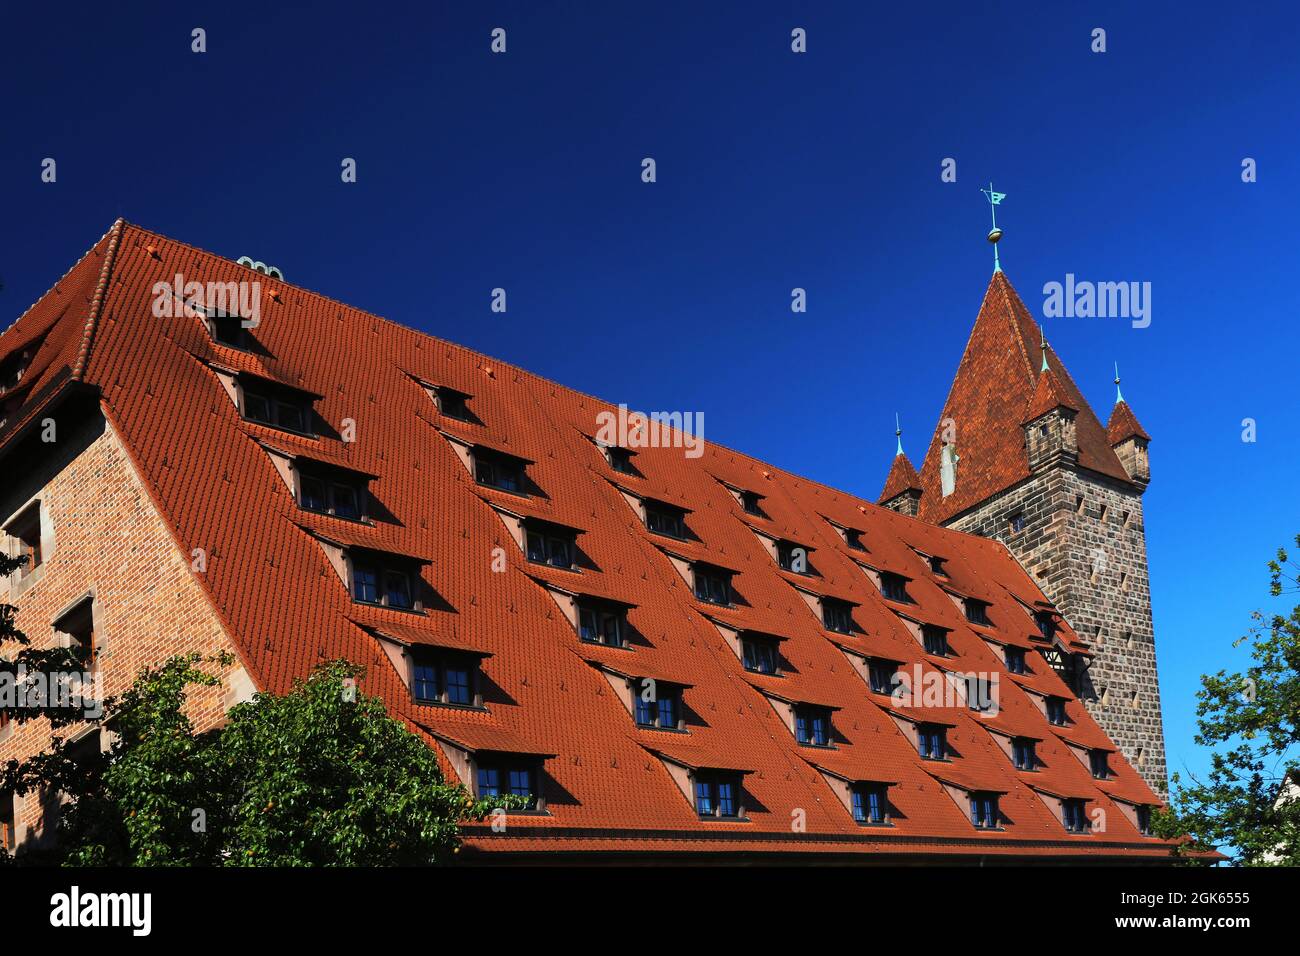 Nürnberg   Architektur mit Burg, Turm, Mauern, Fachwerkhaus in der Innenstadt oder Altstadt von Nuremberg oder Nuernberg, Franken, Bayern Stock Photo